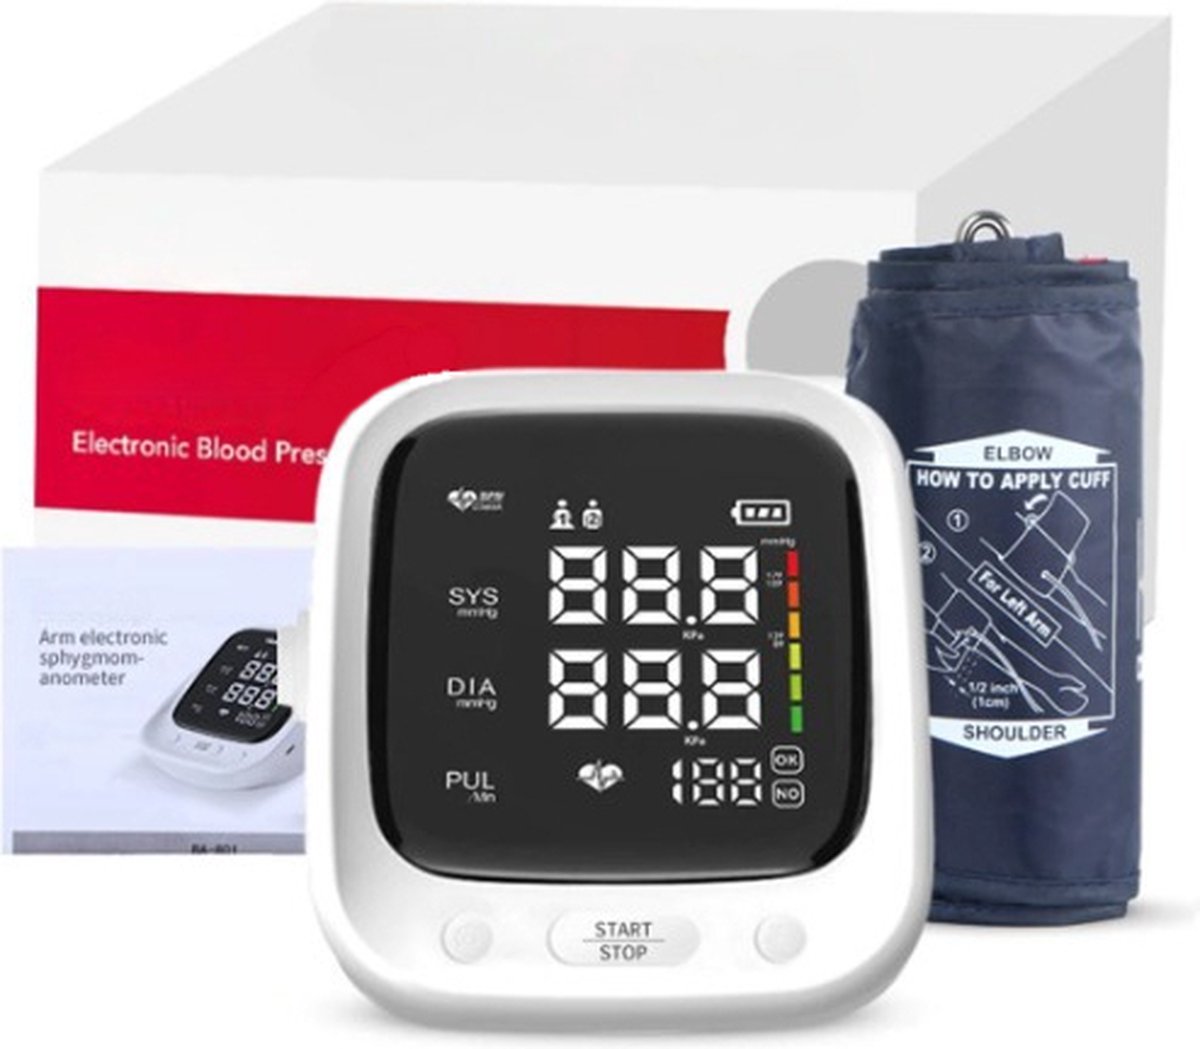 HealthLife Slimme Bovenarm bloeddrukmeter - Hartslagmeter - Hartritmestoornis herkenning - Eenvoudig in gebruik